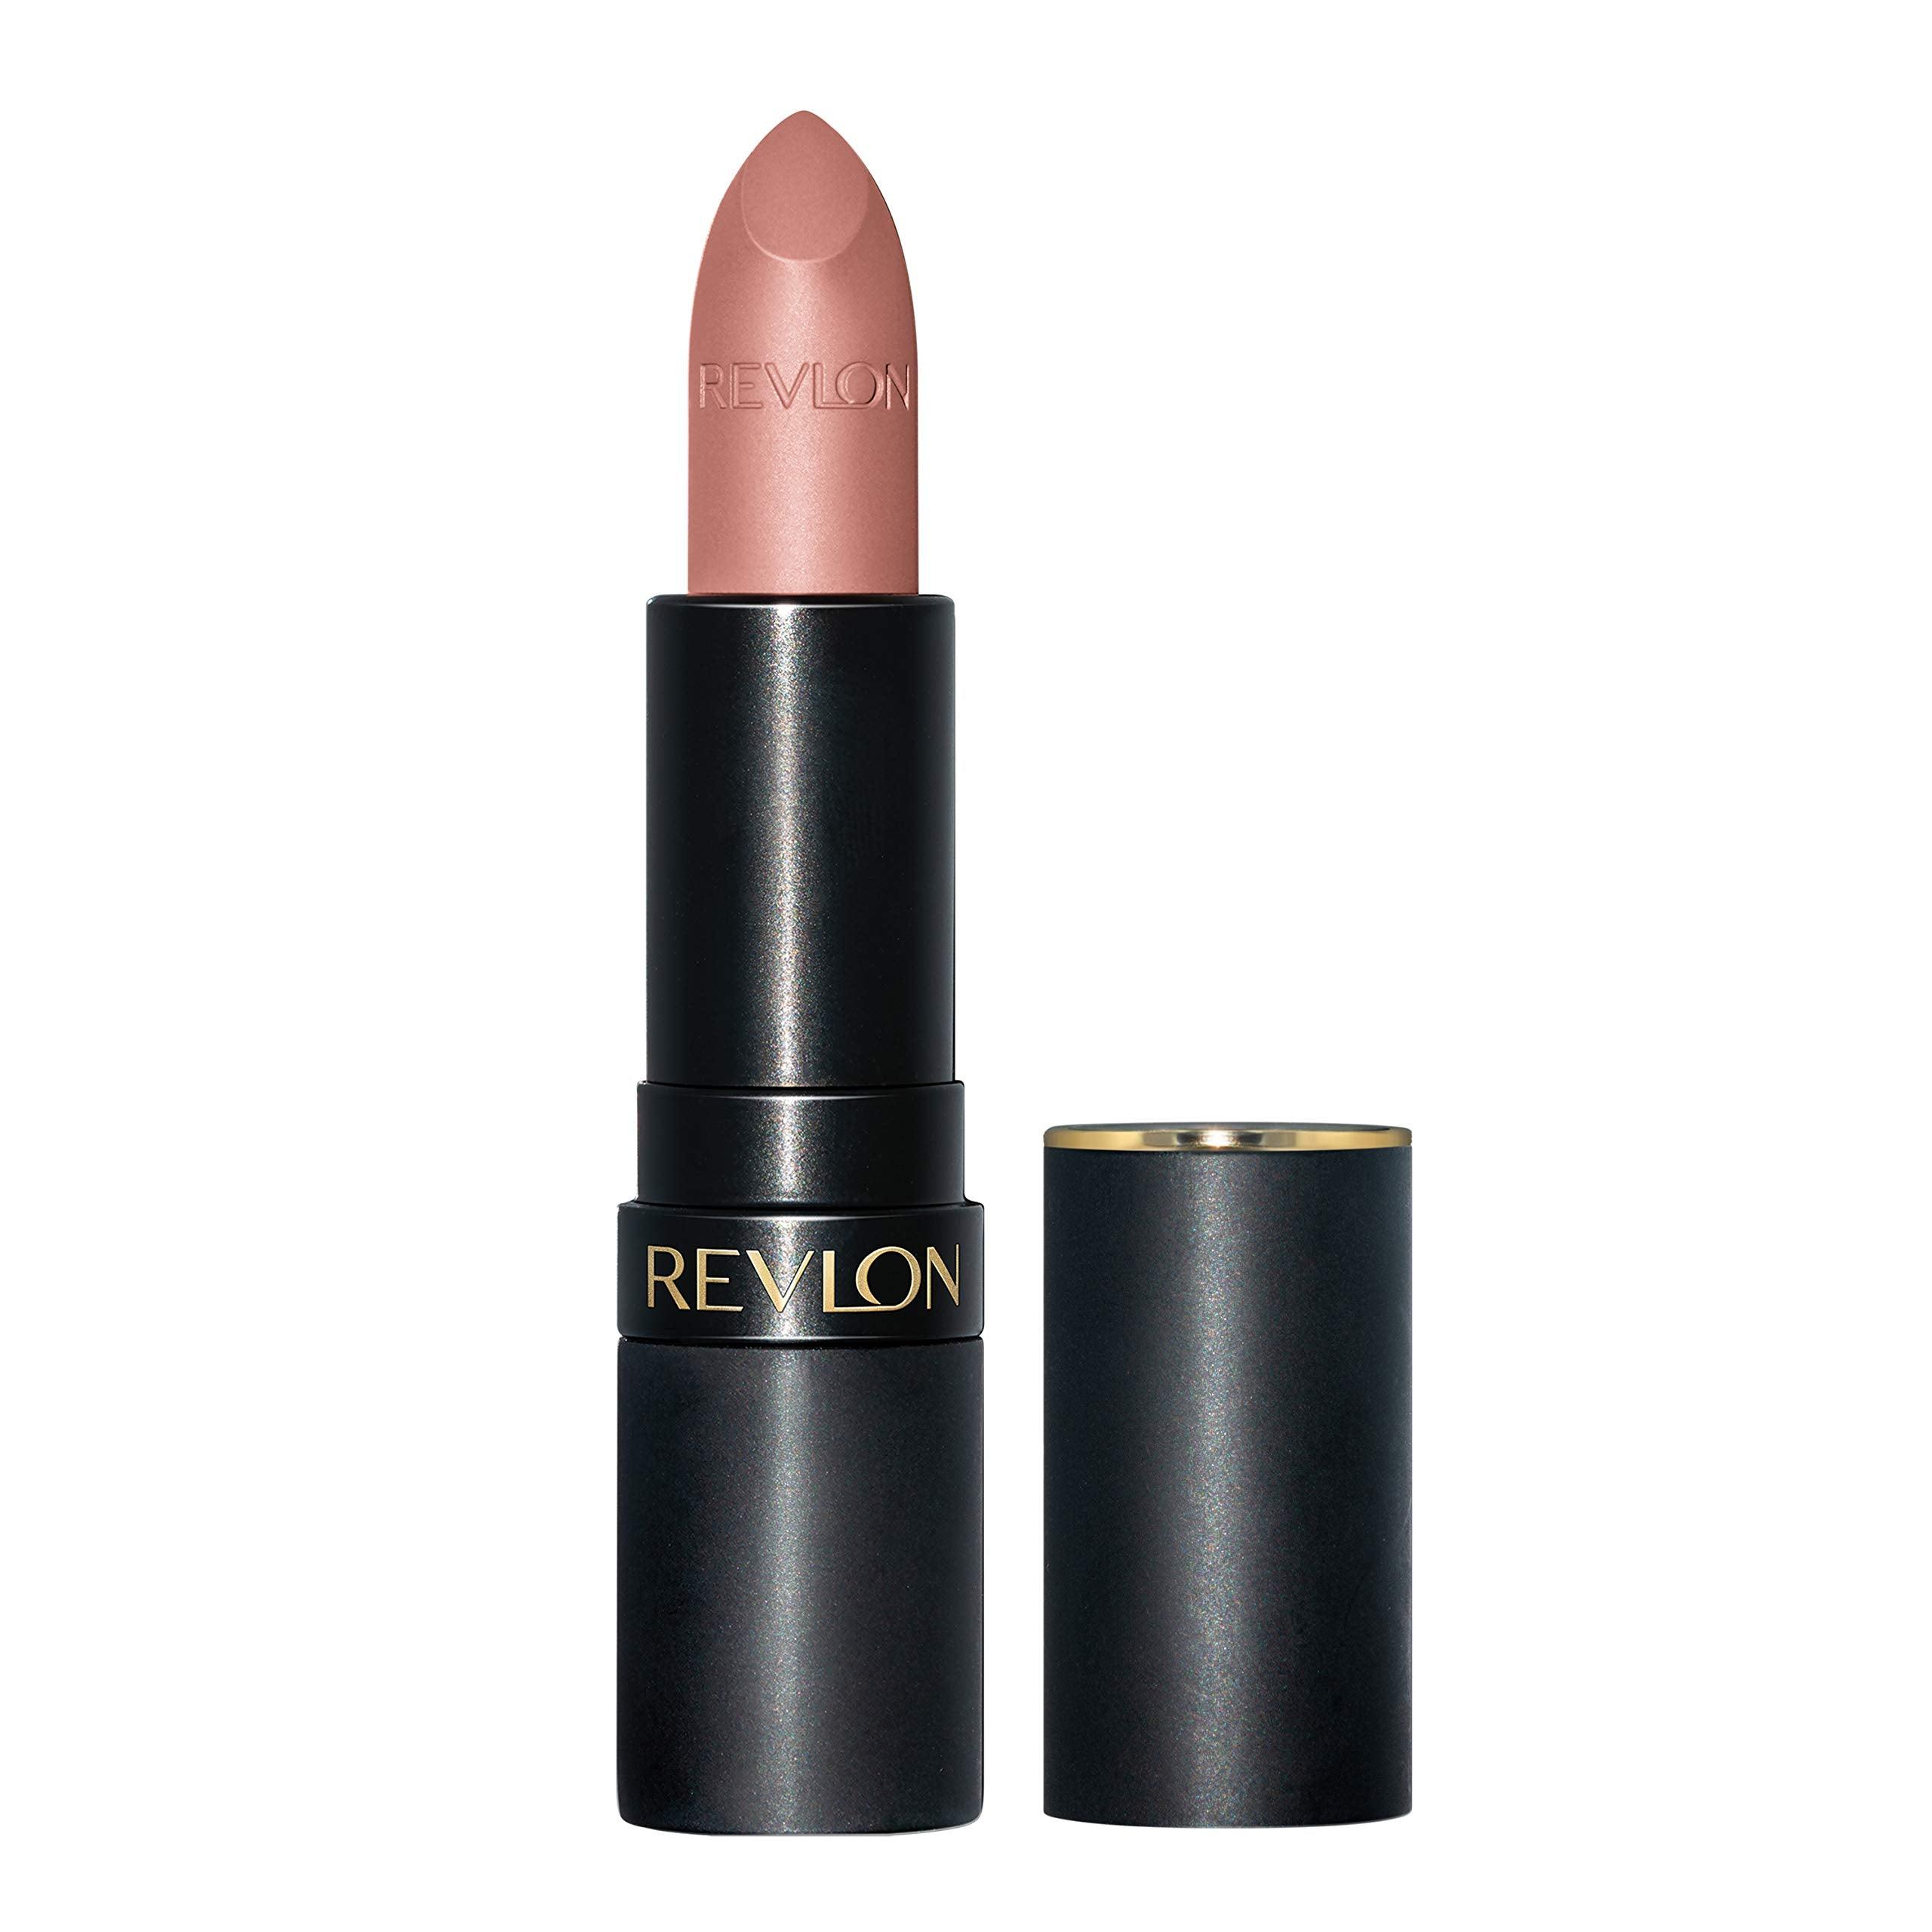 Revlon Super Lustrous Luscious Mattes Lipstick in Pick Me Up 003 - www.indiancart.com.au - lipstick - Revlon - Revlon